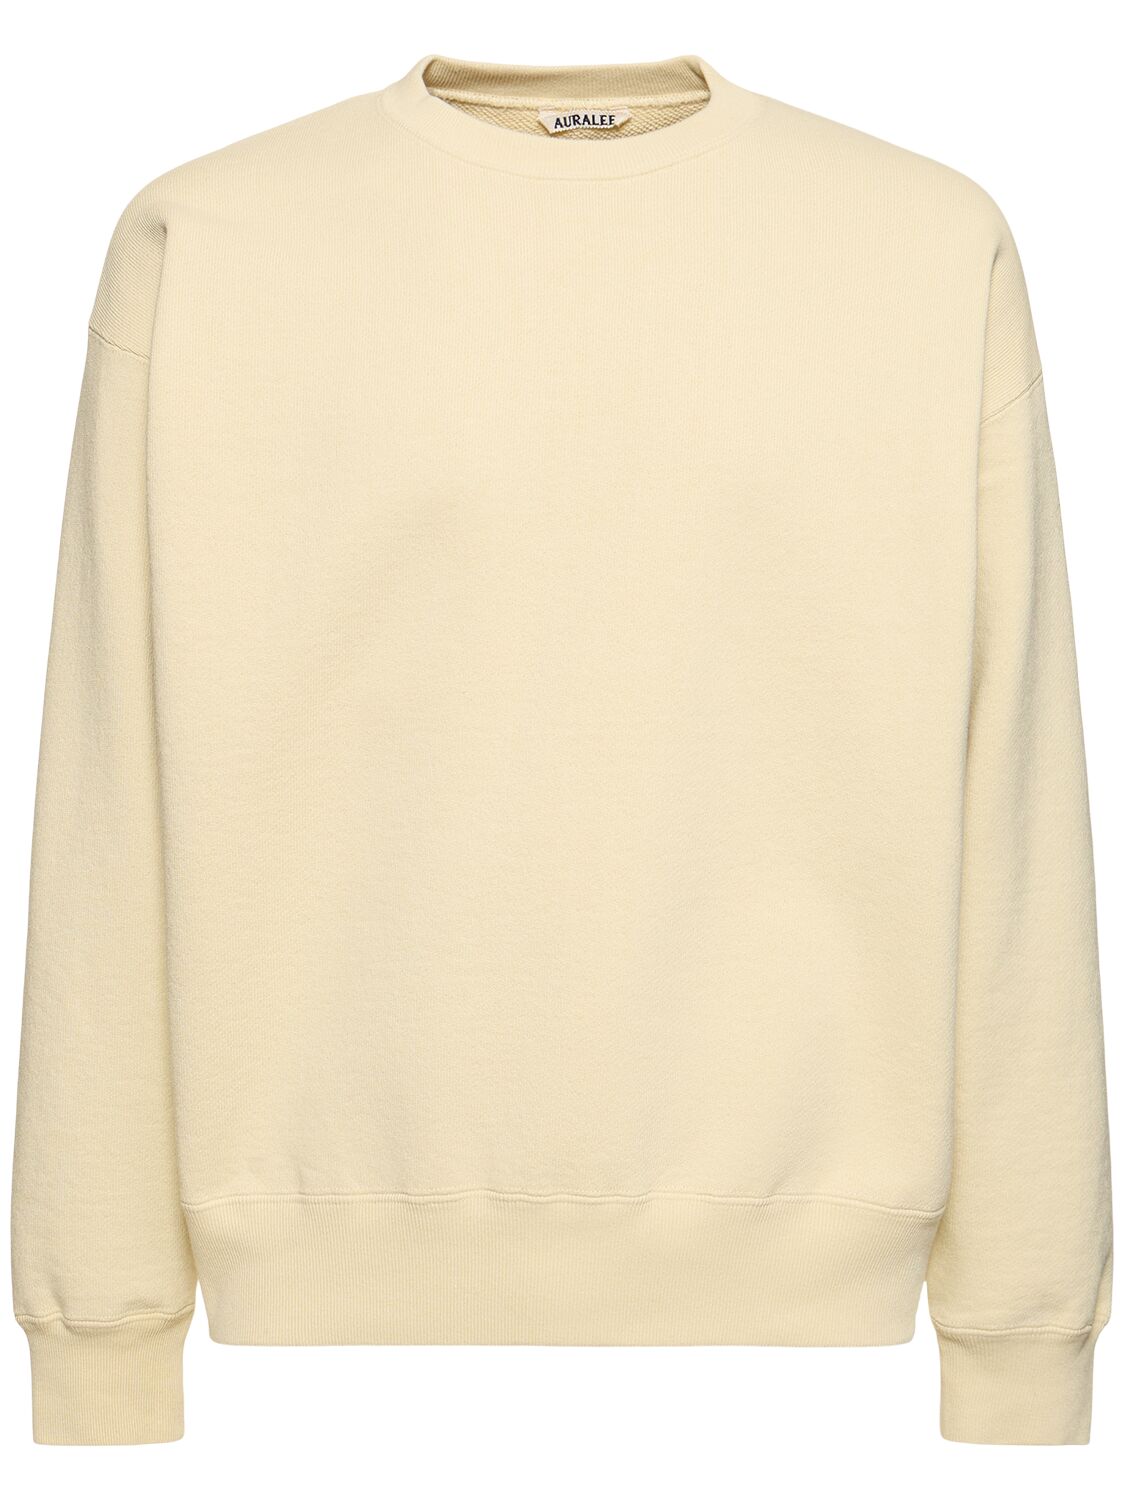 Auralee Cotton Knit Sweatshirt In Yellow